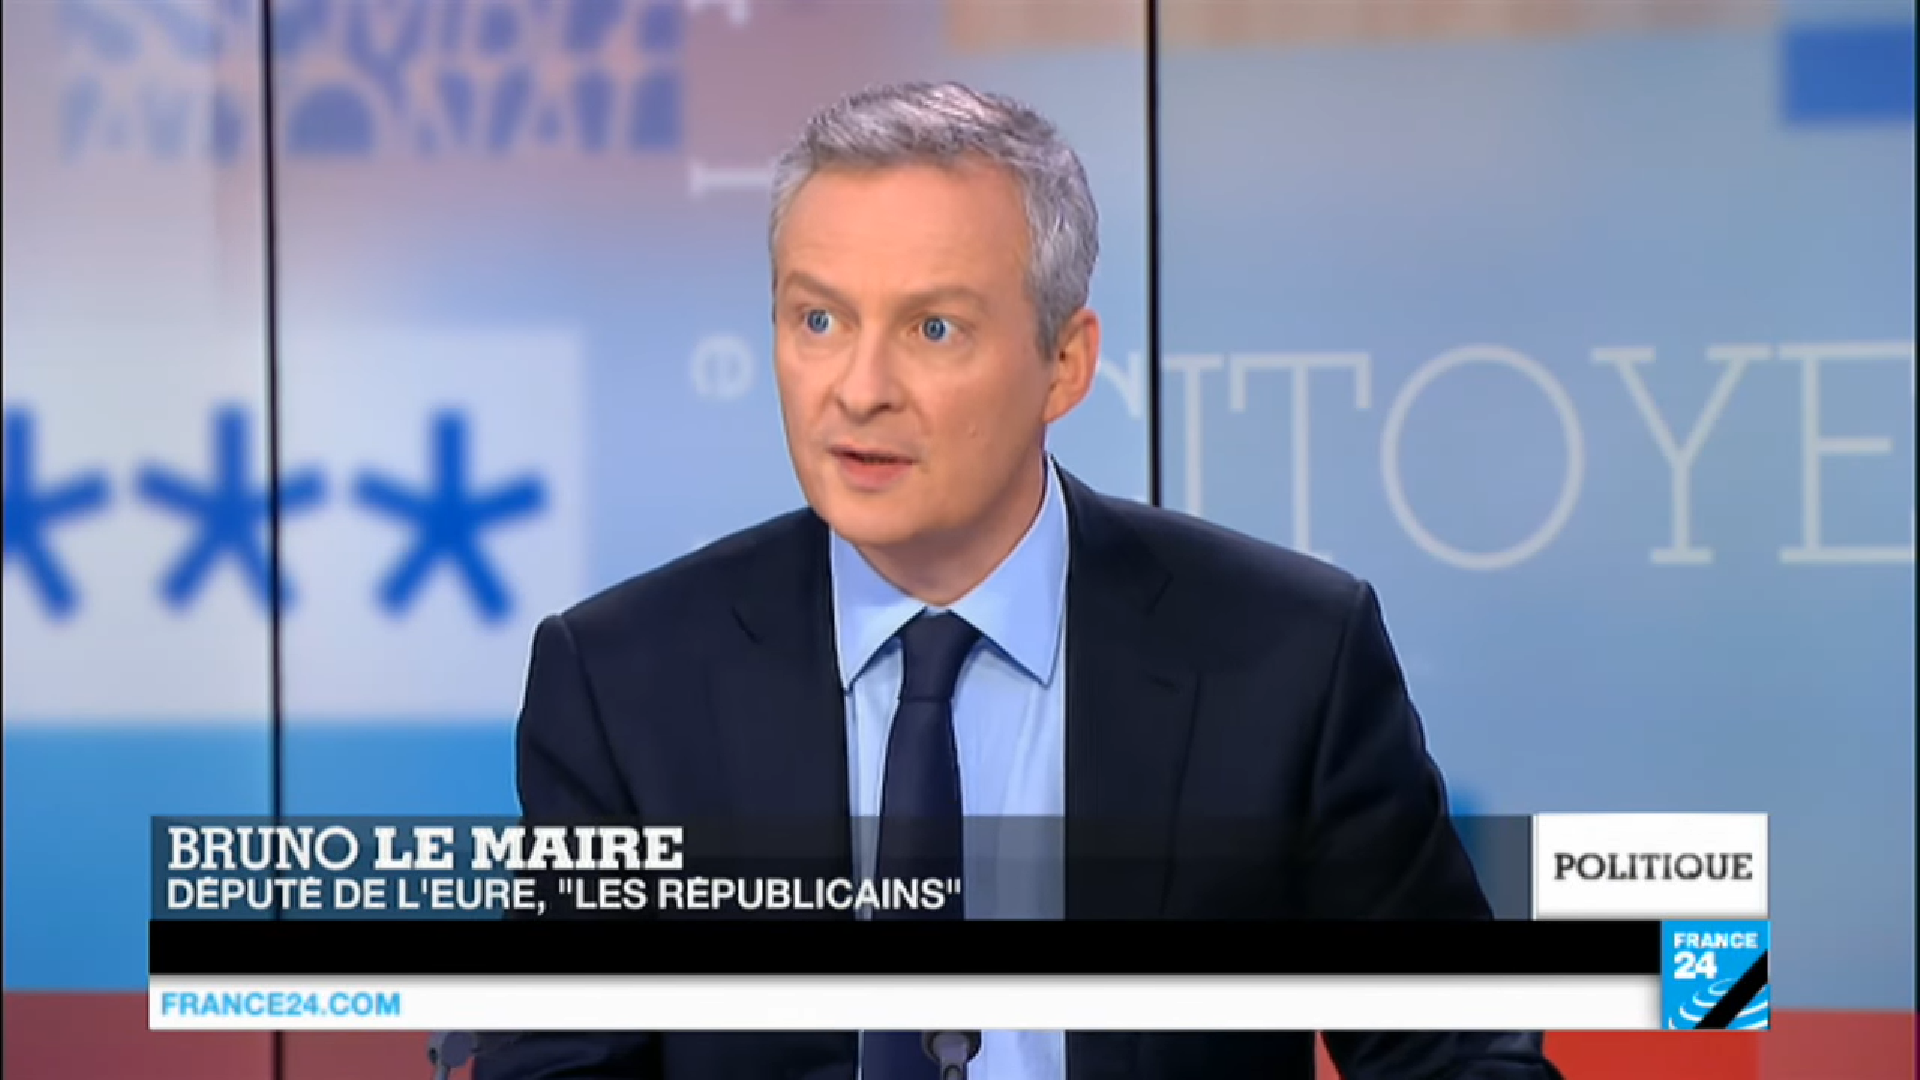 Bruno le Maire, fot. France24